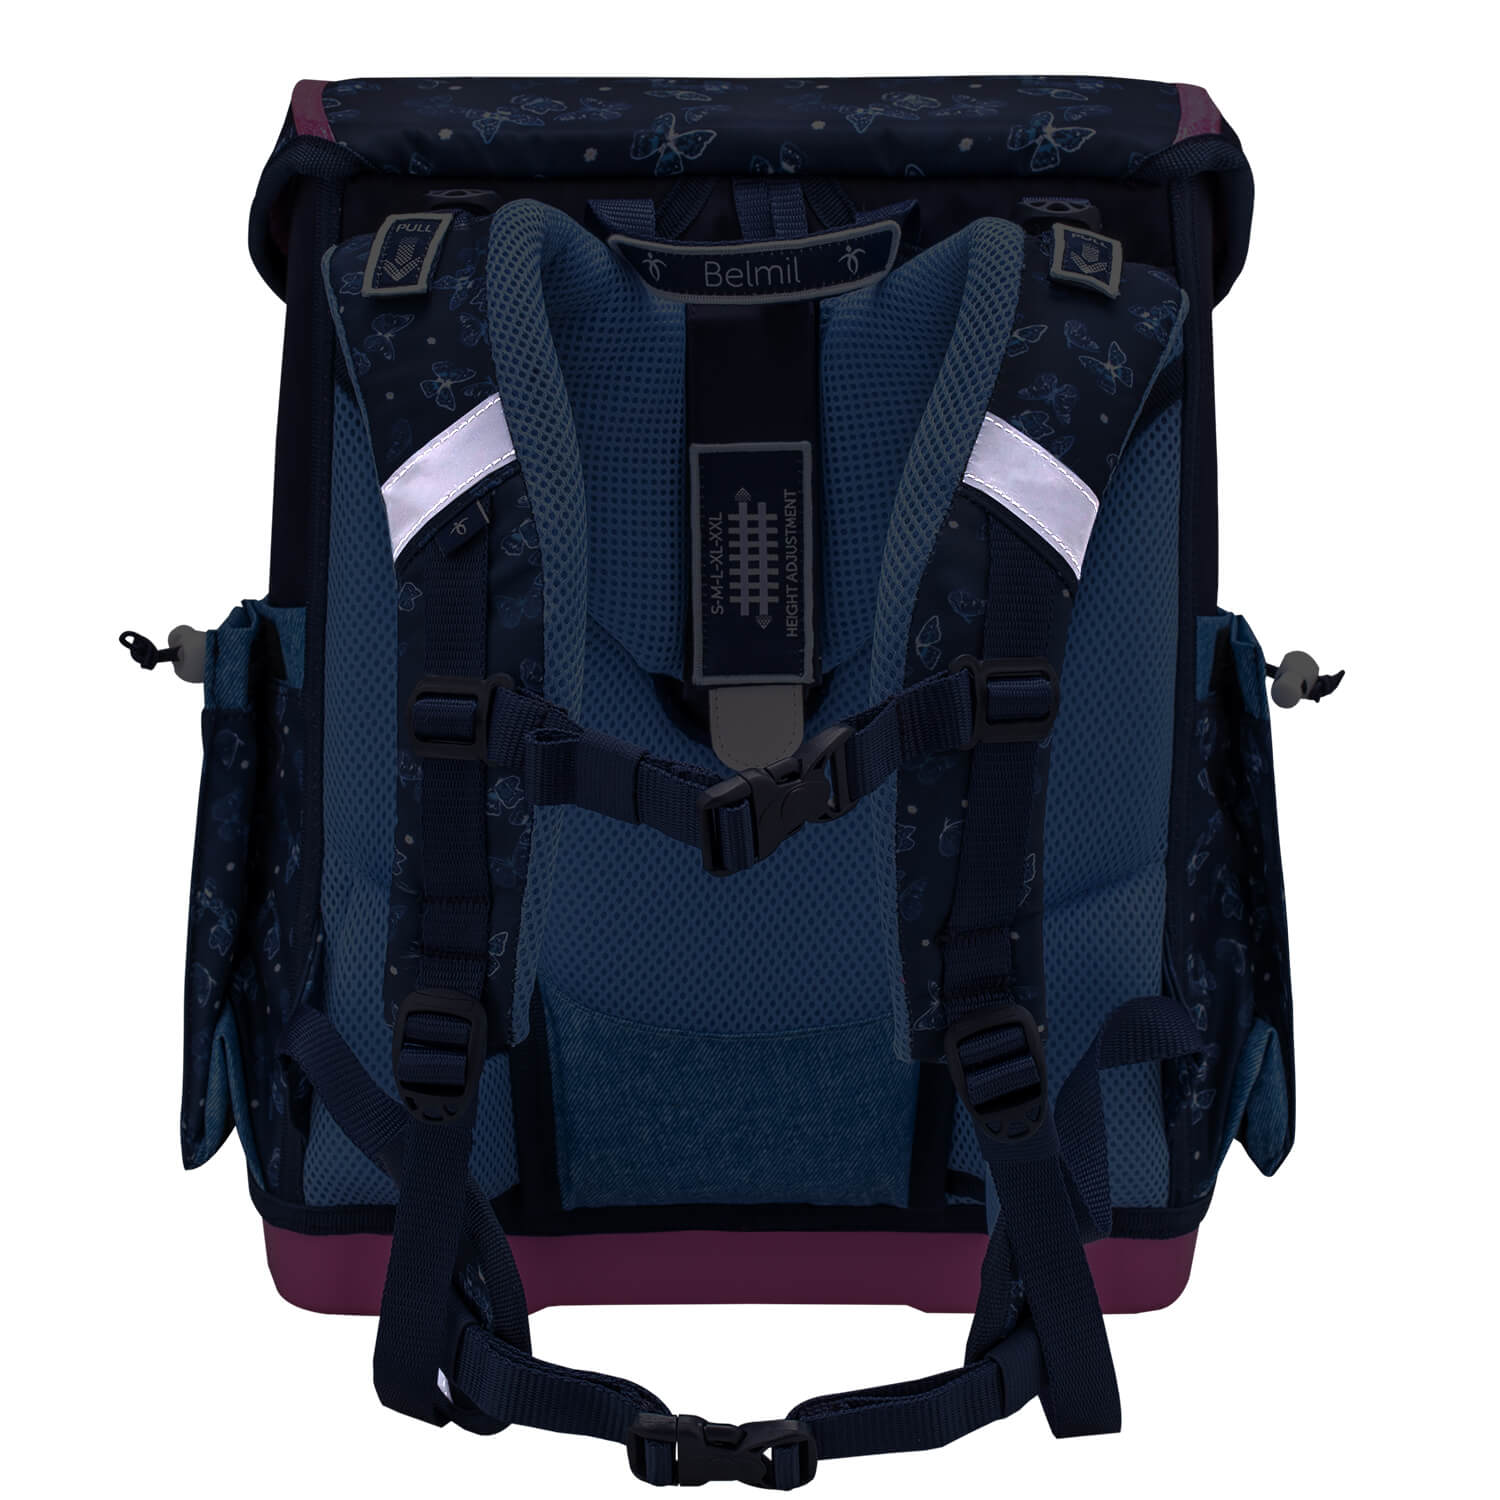 Premium Compact Plus Sapphire Schoolbag set 5pcs.